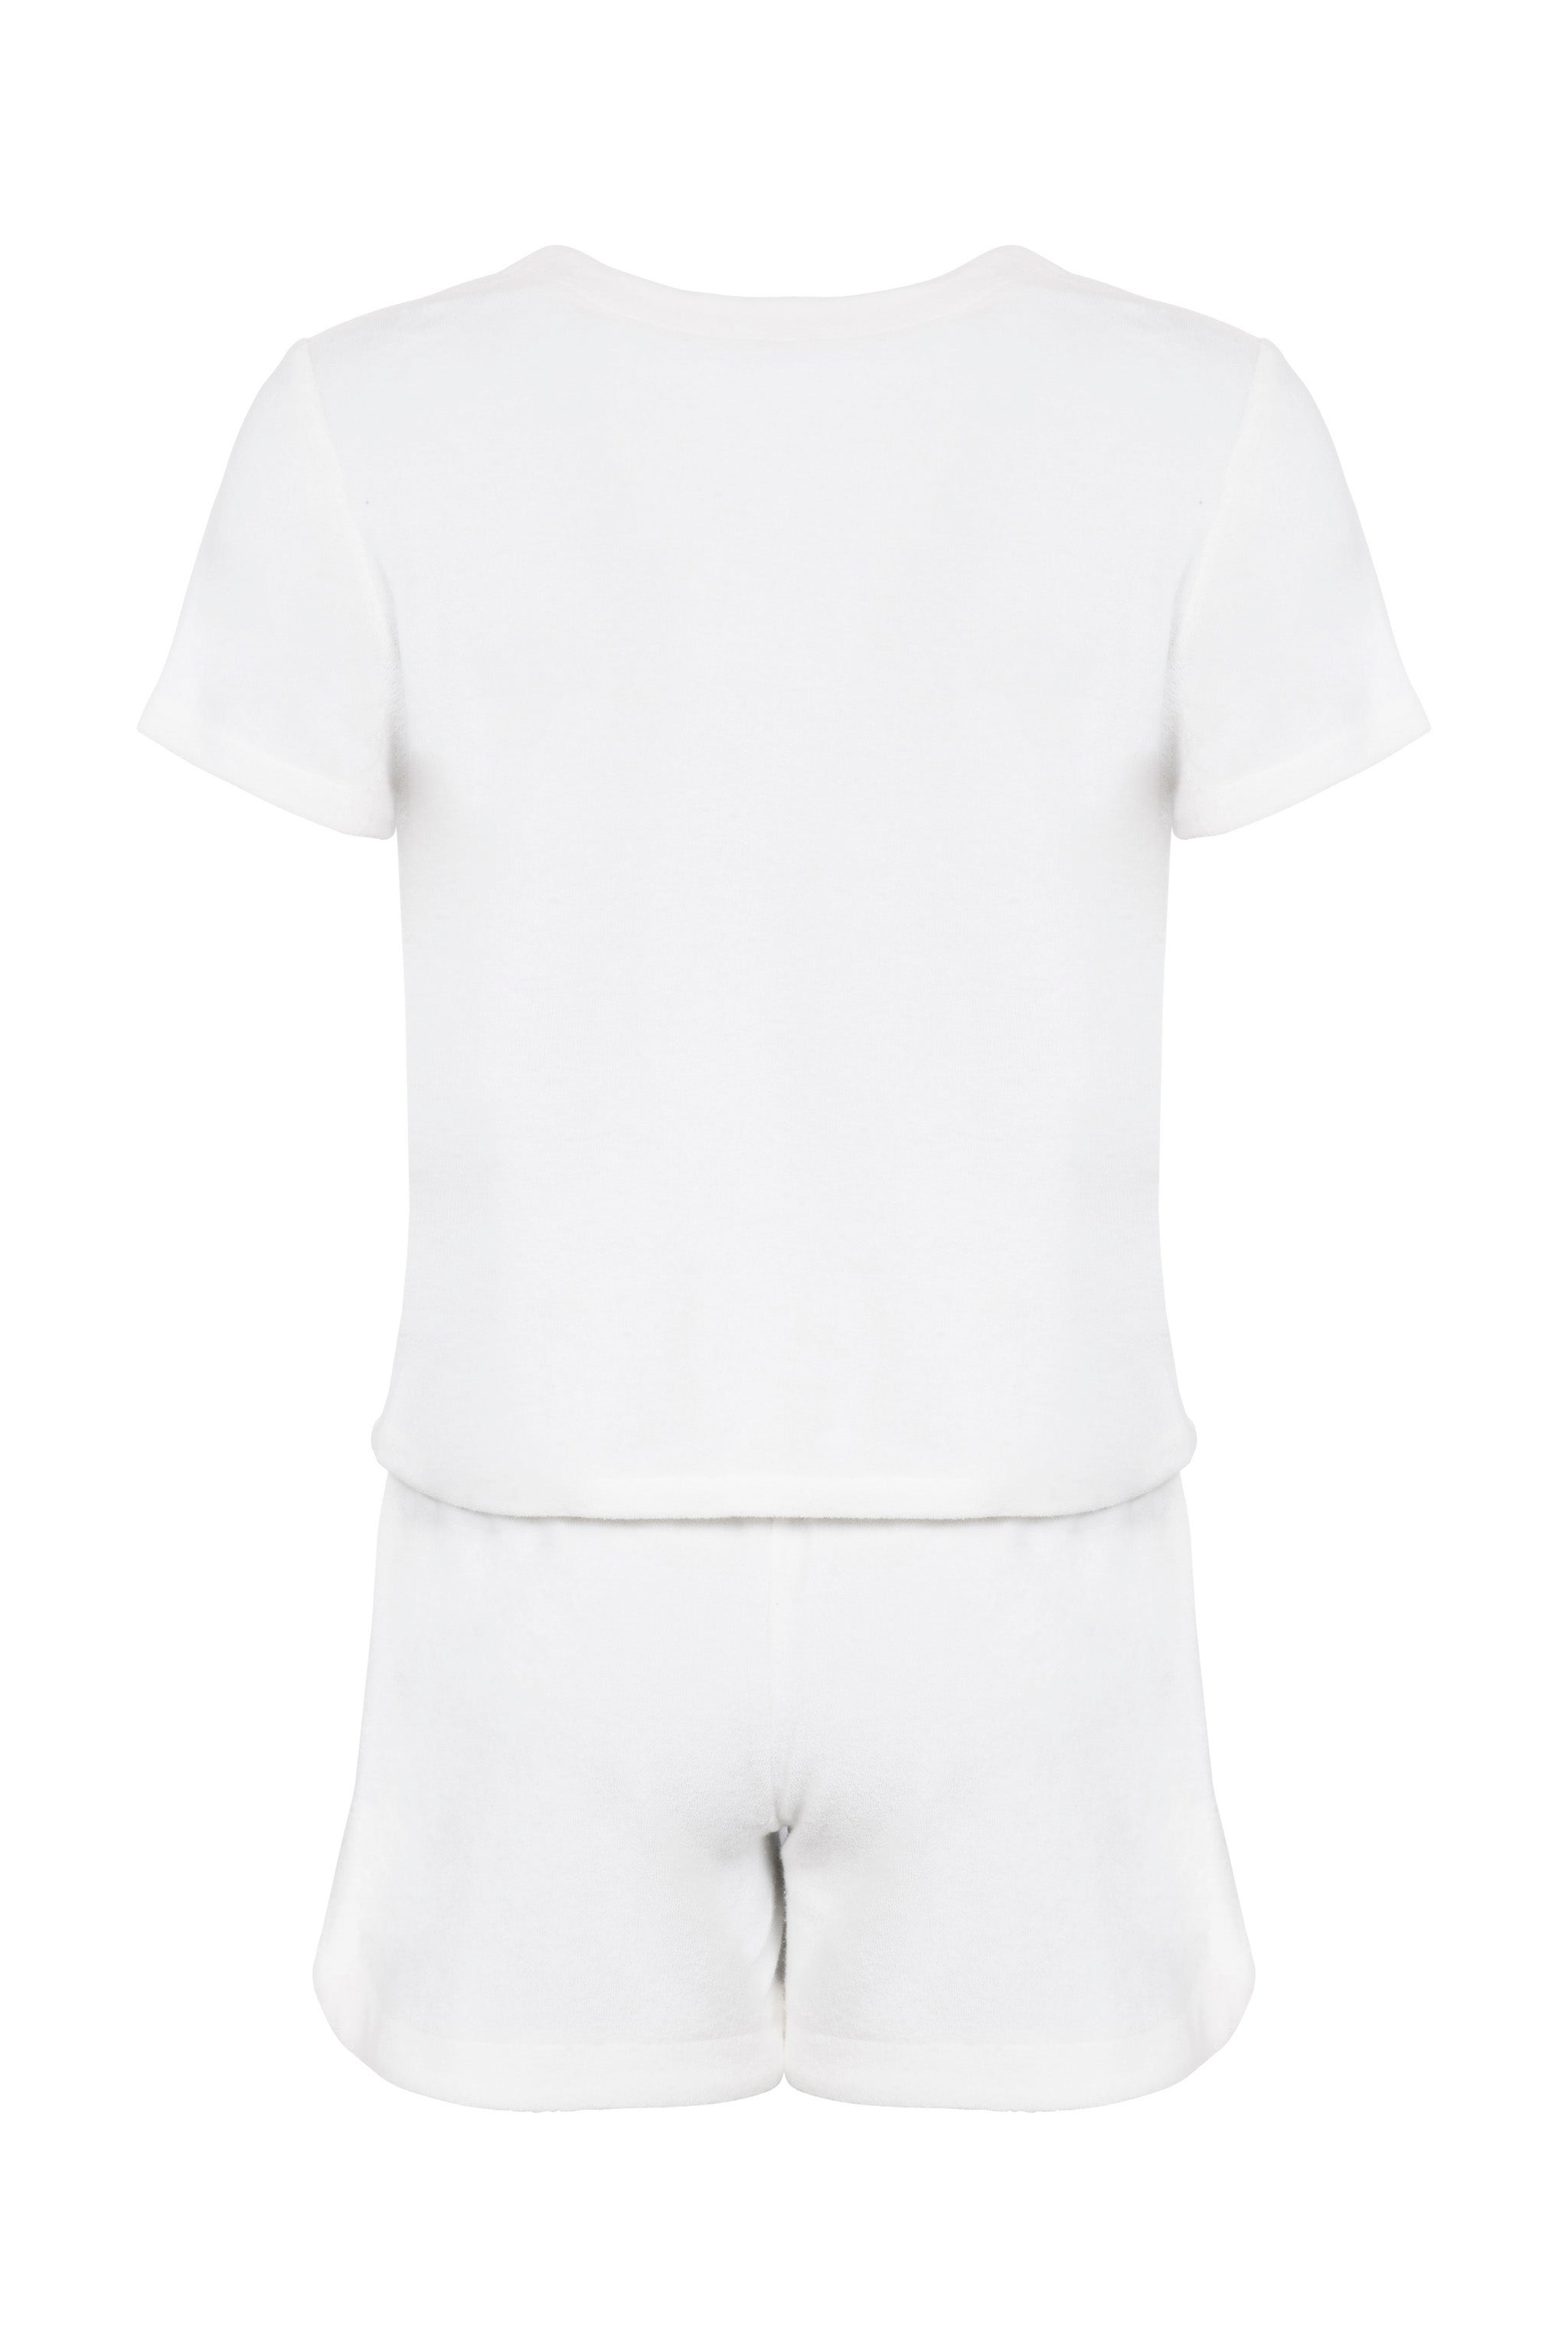 Towelling Jacket & Shorts Set (White)